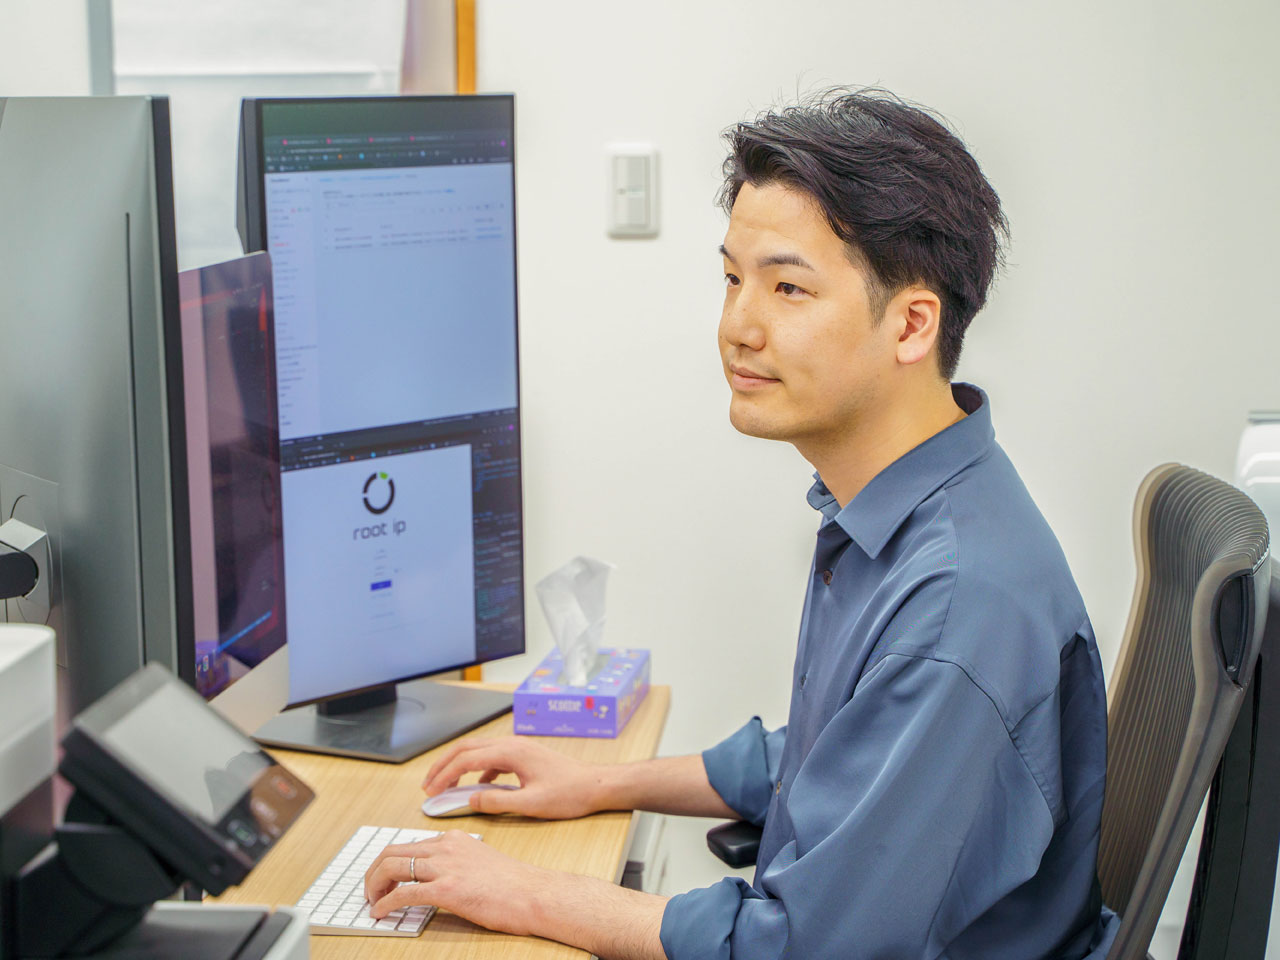 プログラミング経験を持ち、弁理士でもある代表・大倉昭人氏が中心となり、システムを自社開発。紙文化などの古い業務体系が残る特許業界に光を当て、DX化を通じて“特許業務の効率化”を日々追求している。